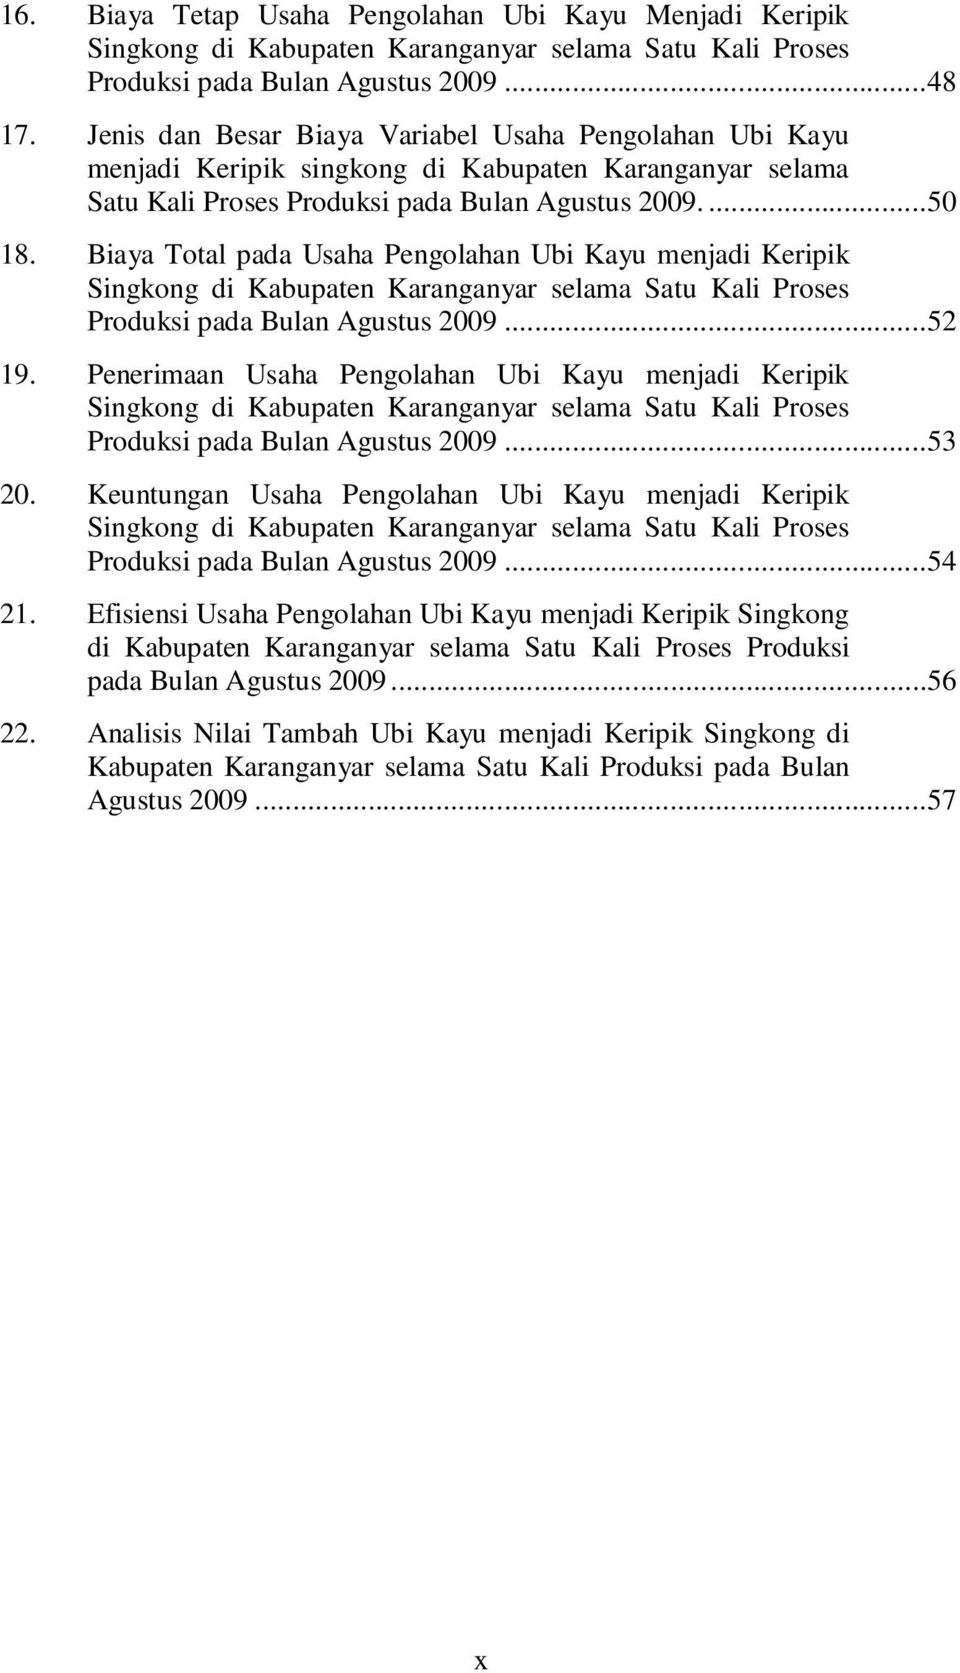 Biaya Total pada Usaha Pengolahan Ubi Kayu menjadi Keripik Singkong di Kabupaten Karanganyar selama Satu Kali Proses Produksi pada Bulan Agustus 2009...52 19.